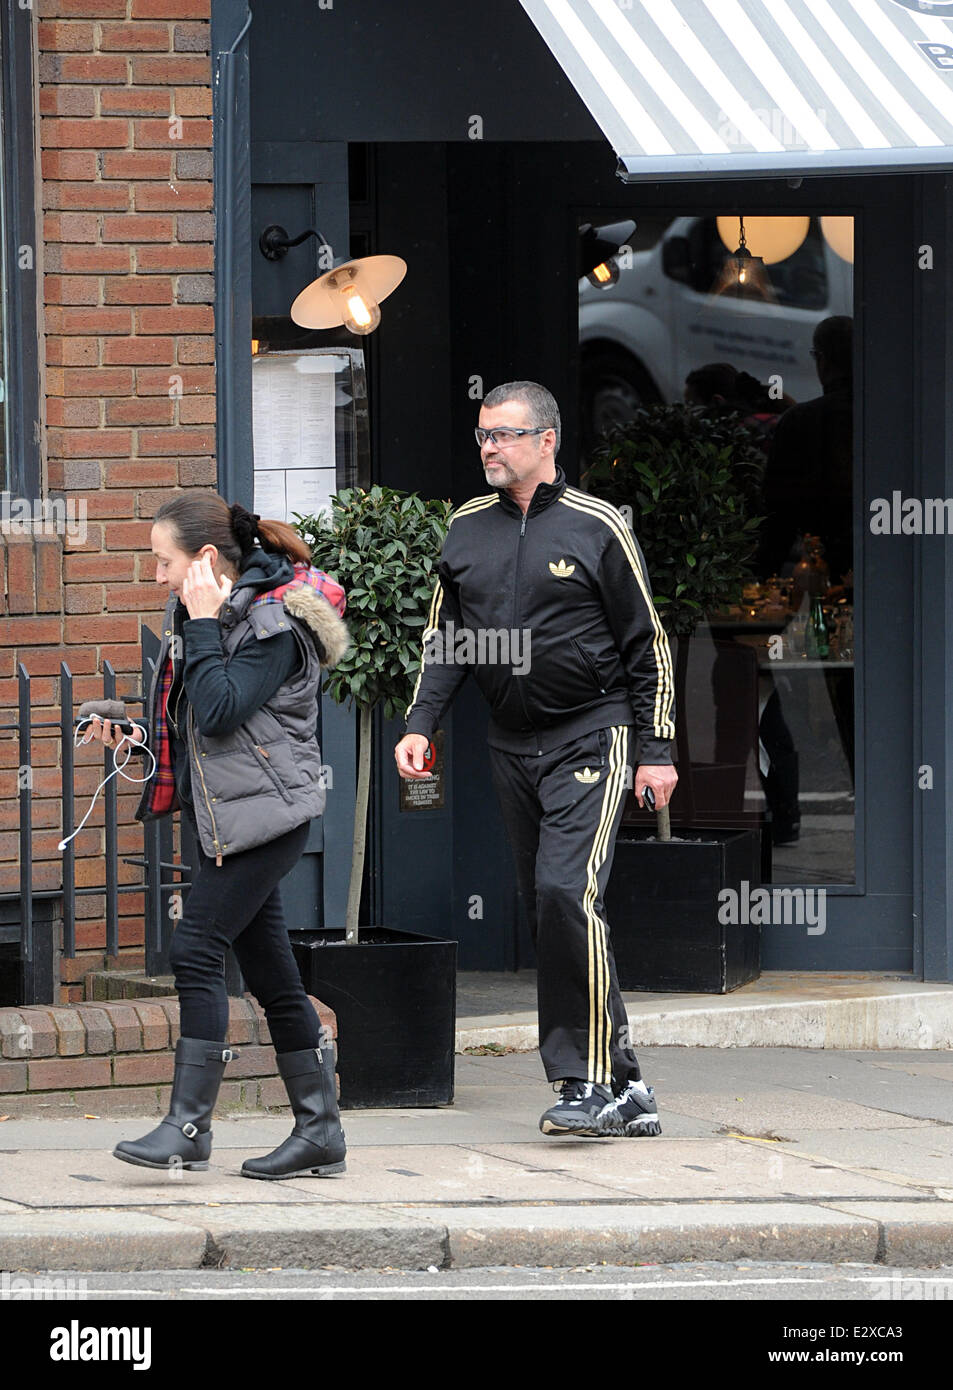 George Michael und ein Freund gesehen Cote Brasserie im Norden von London  nach dem Mittagessen verlassen. George trägt einen schwarzen Trainingsanzug  von Adidas mit goldenen Streifen. Mitwirkende: George Michael wo: London  wenn: